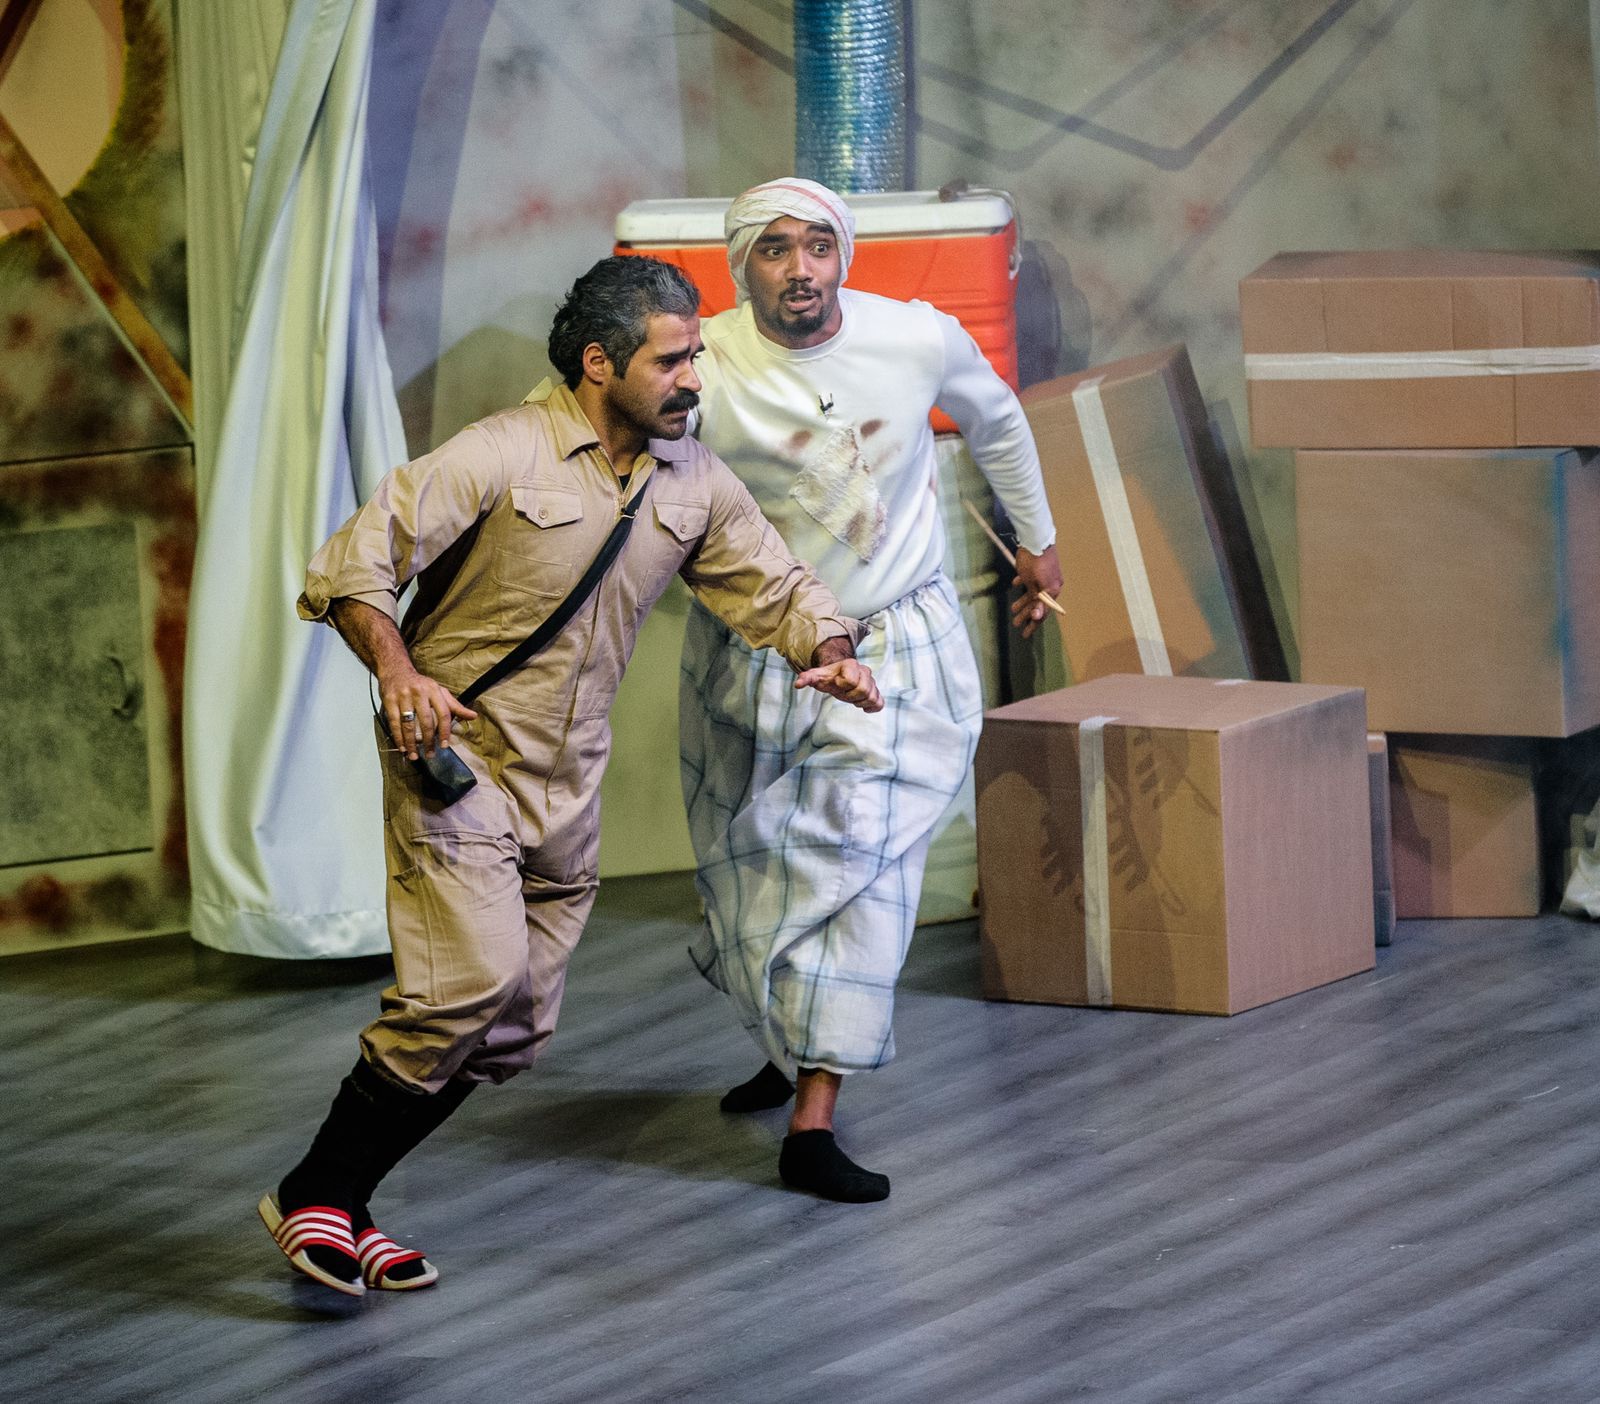 مسرحية الثلاجة كوميديا اجتماعية تهدي زوار موسم الرياض الابتسامة